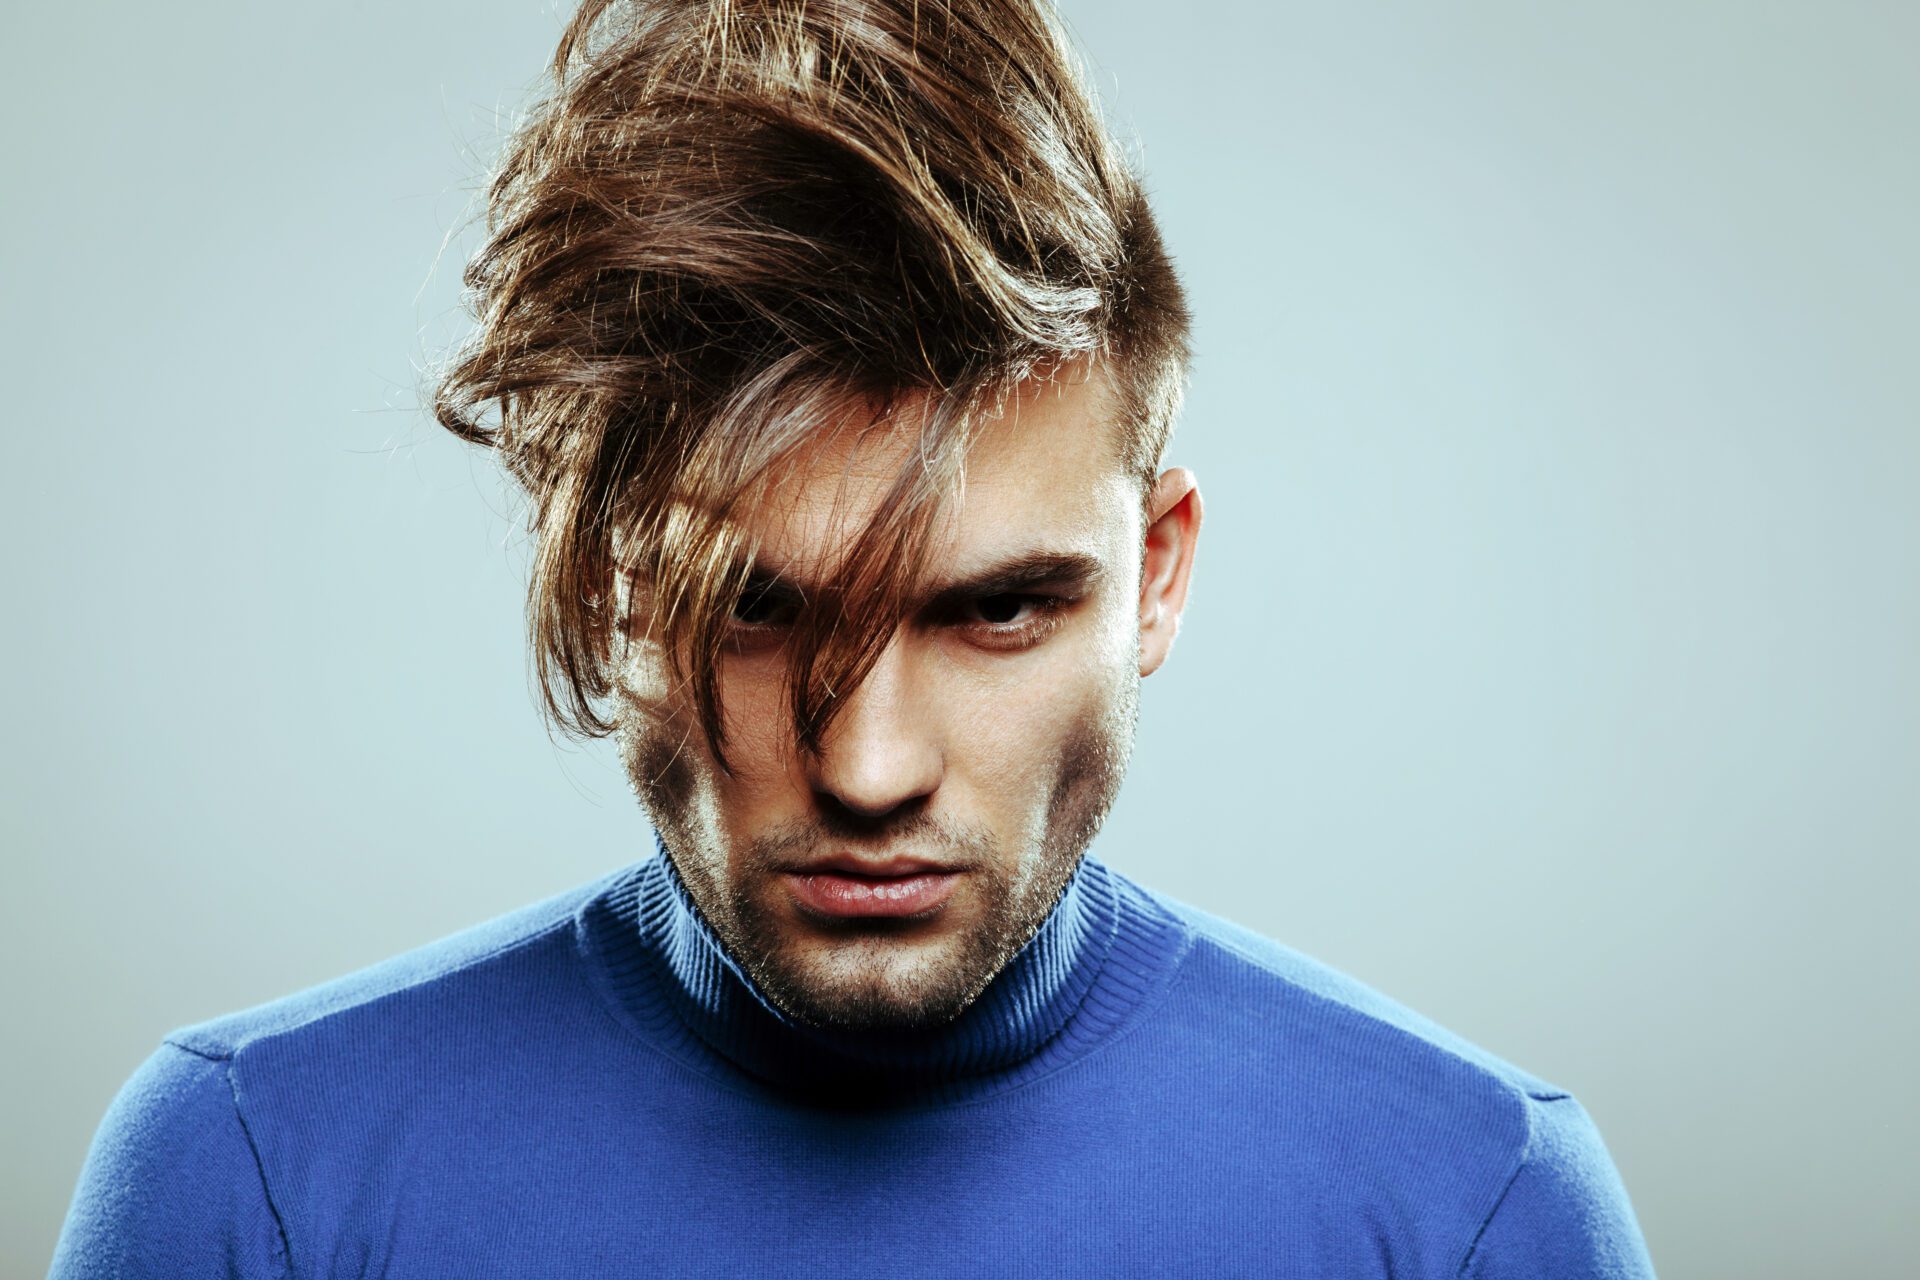 Hairstyling for Modern Men - Top Trending Hairstyles | Braun UK